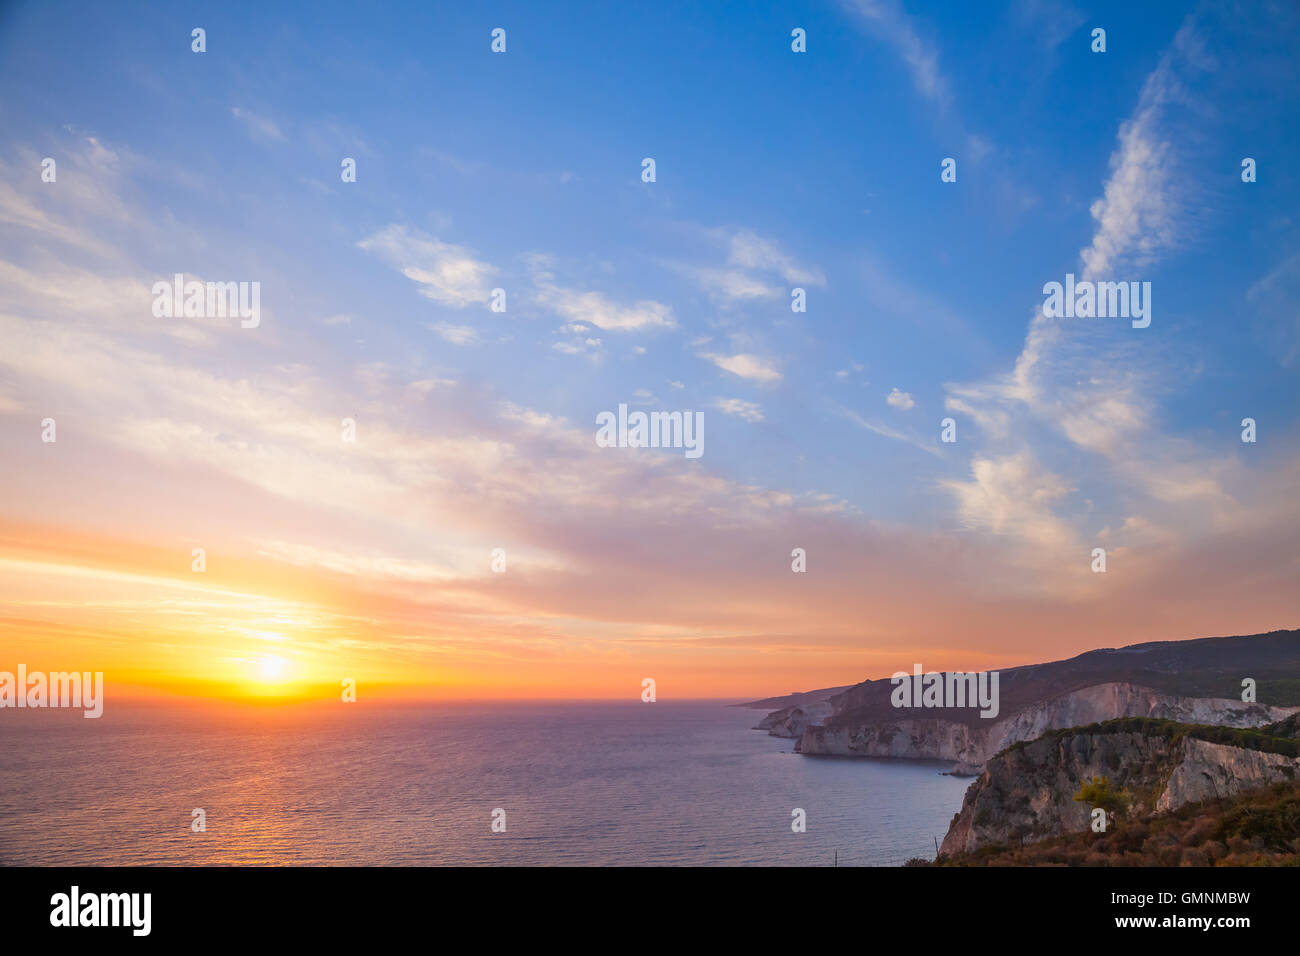 Farbenprächtigen Sonnenuntergang. Foto vom Kap Keri im Südwesten der griechischen Insel Zakynthos im Ionischen Meer Stockfoto